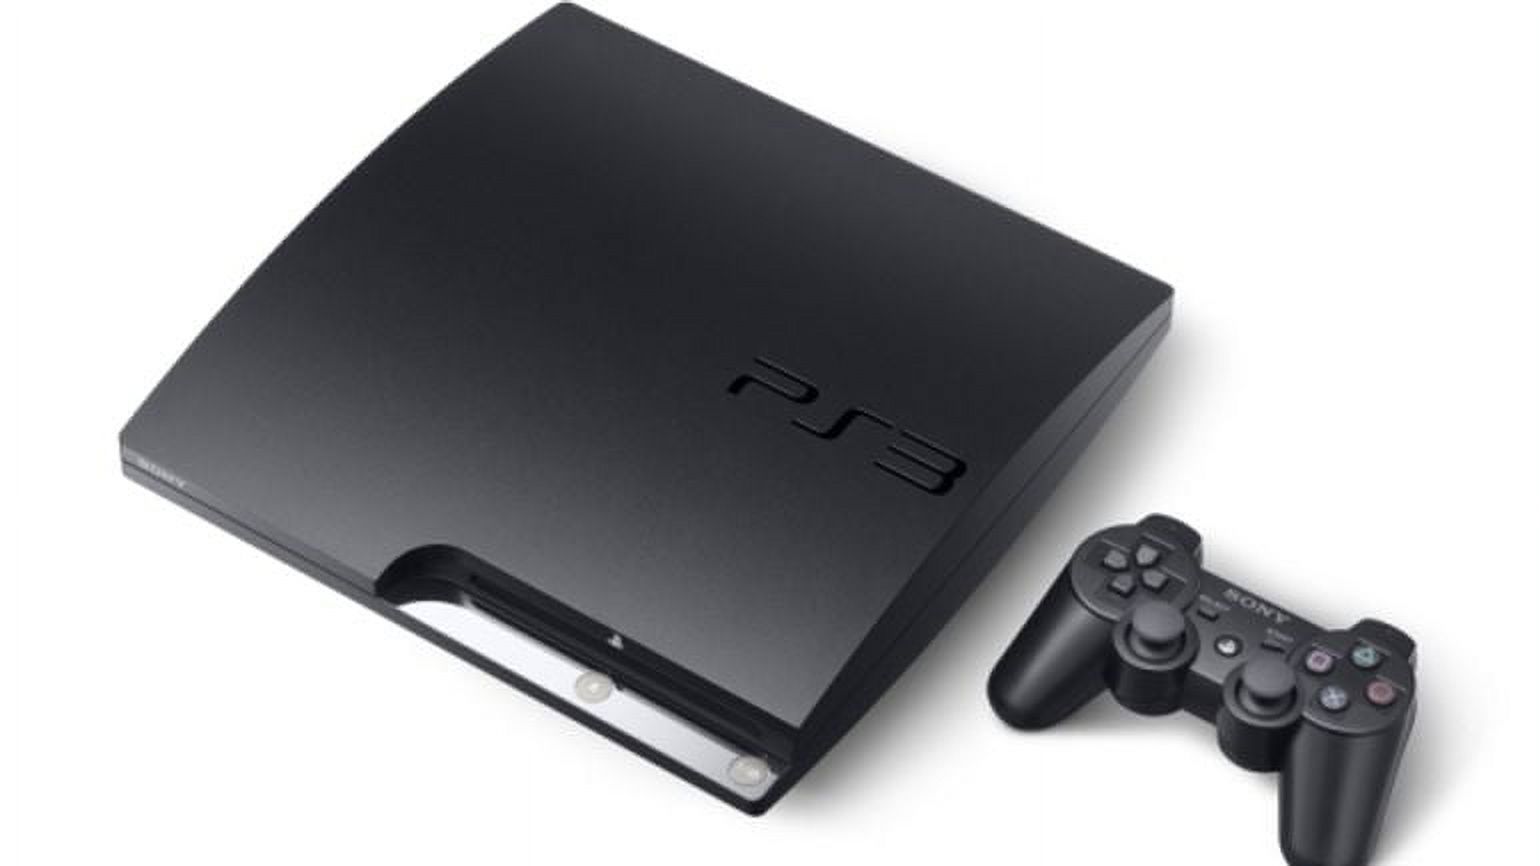 Sony Playstation 3 160GB System 